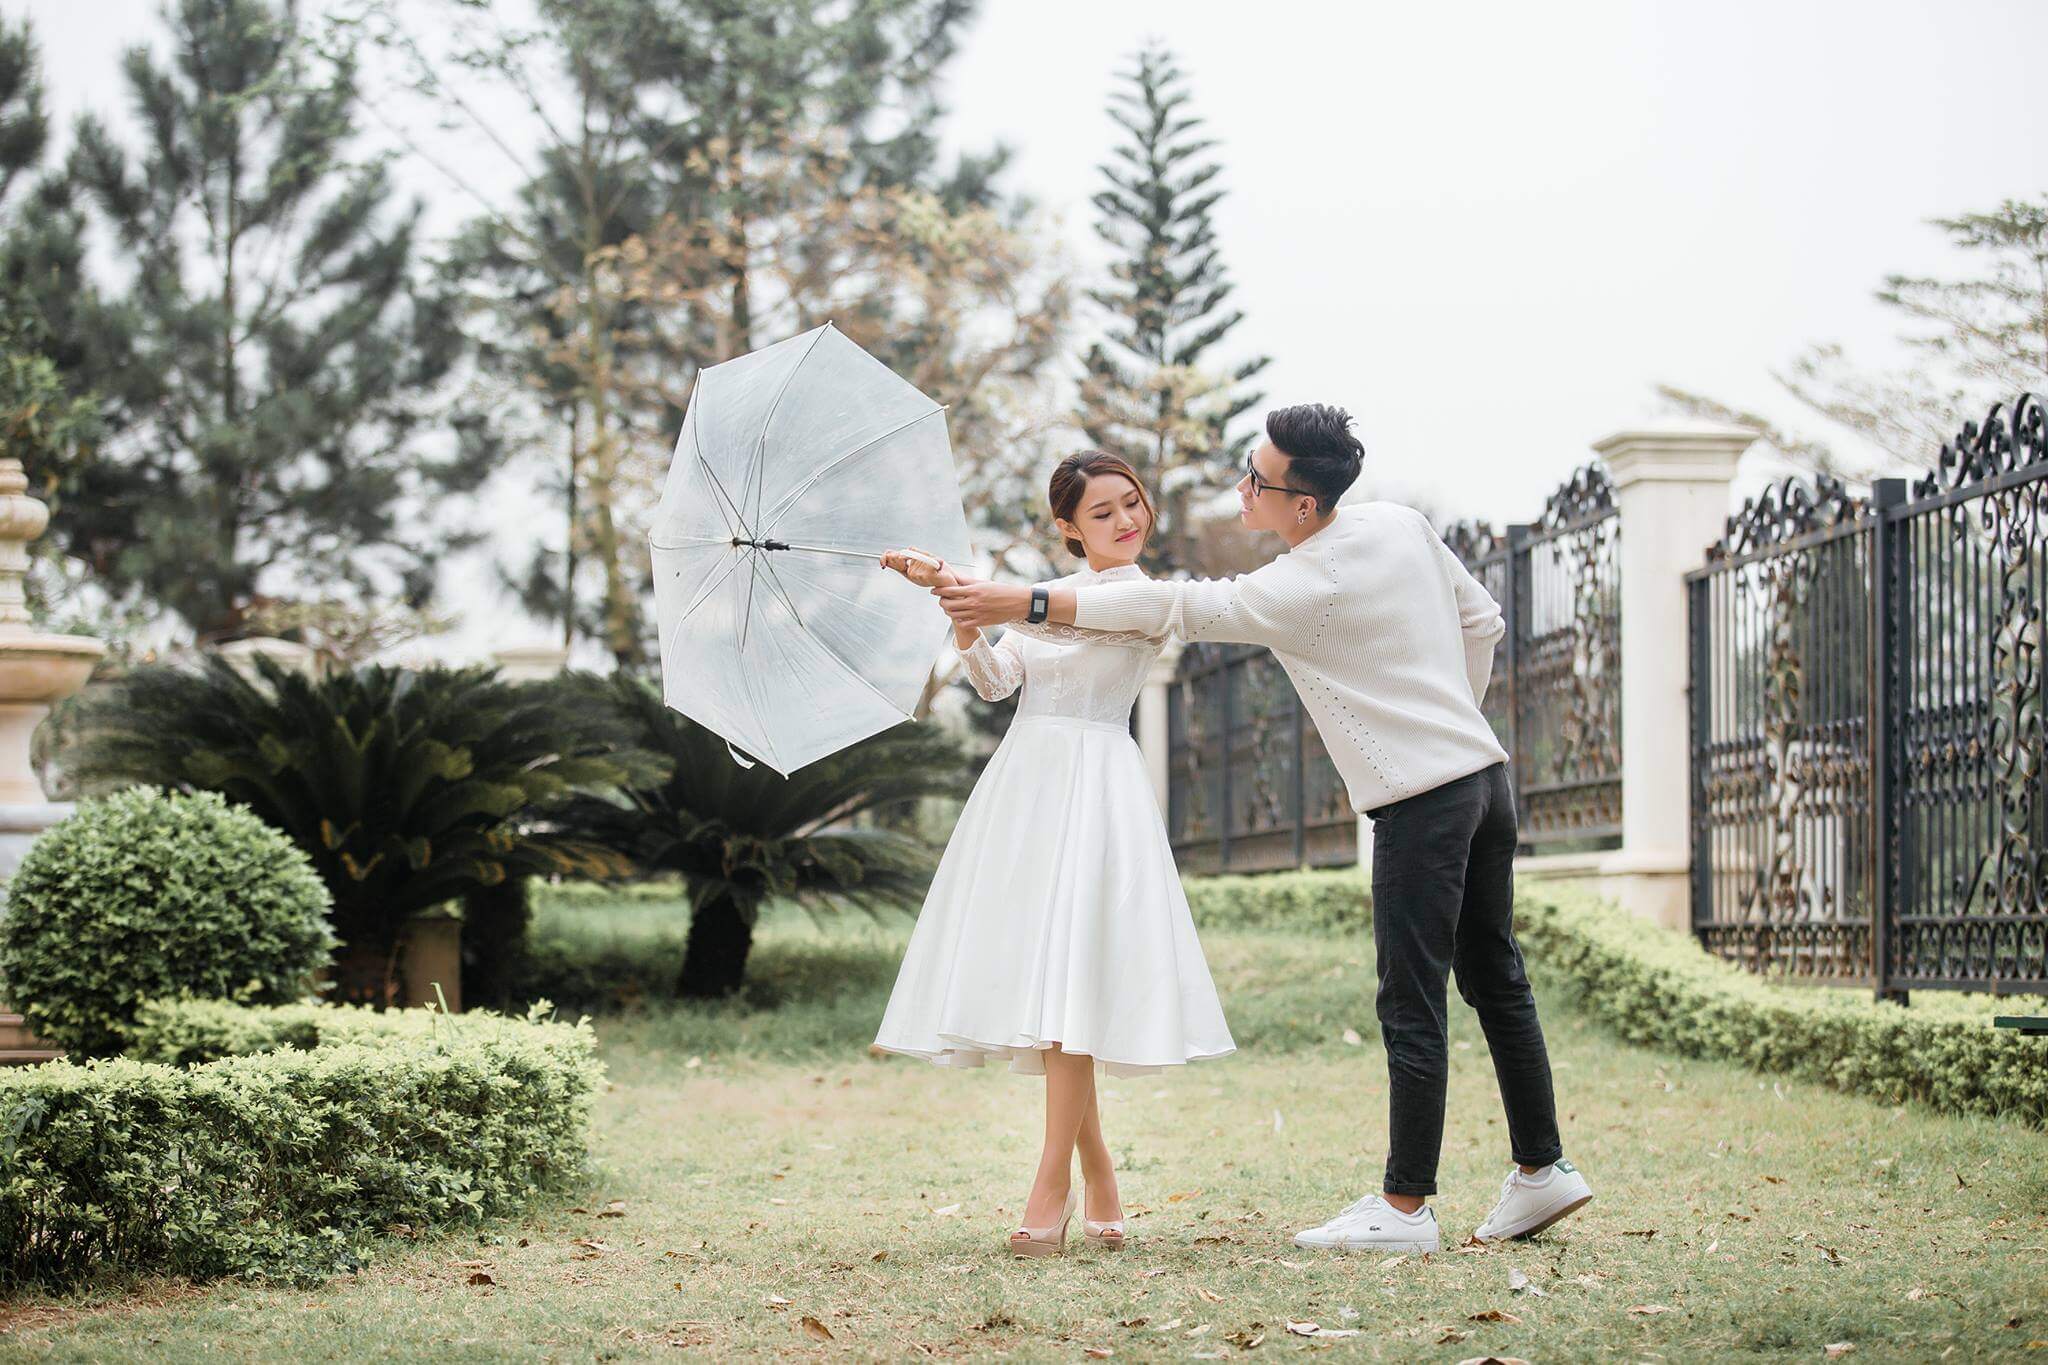 Chúng tôi là dịch vụ chụp ảnh cưới chuyên nghiệp tại Thanh Xuân, cam kết đáp ứng mọi nhu cầu của khách hàng. Chúng tôi mang lại cho bạn những bức ảnh cưới đẹp nhất để lưu giữ kỷ niệm quan trọng trong cuộc đời. Hãy cùng khám phá dịch vụ của chúng tôi.